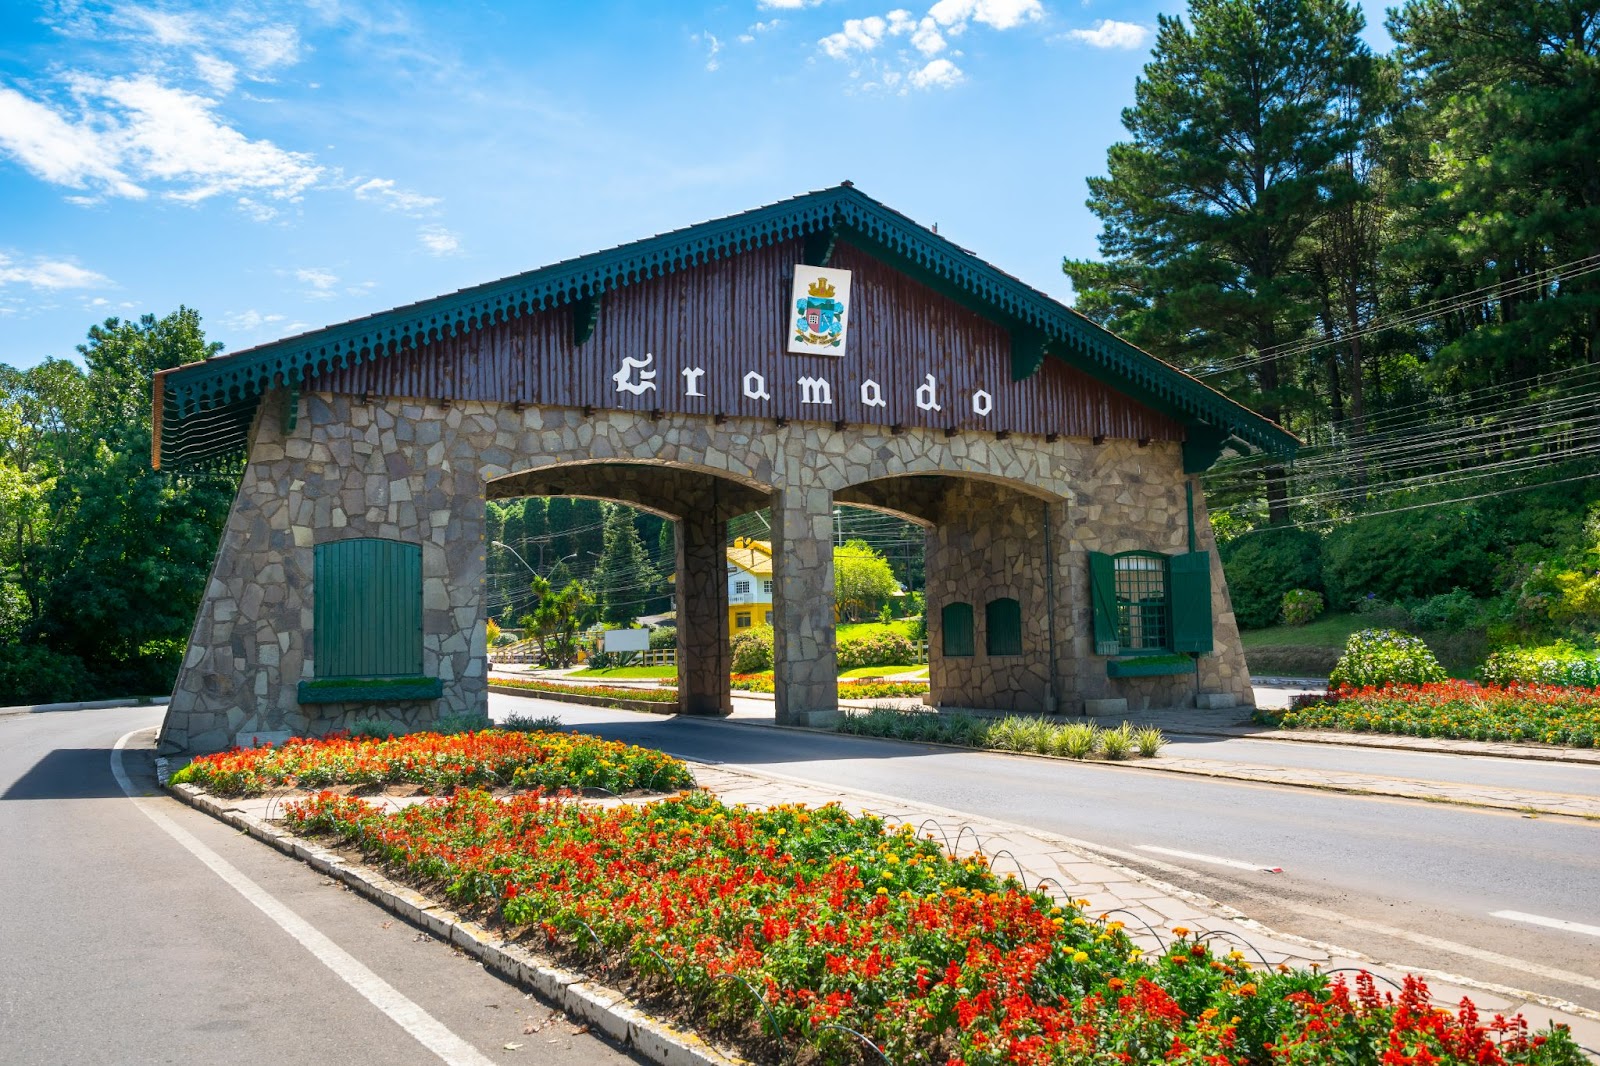 Portal de entrada para a cidade de Gramado. Estrutura colonial com o nome da cidade.